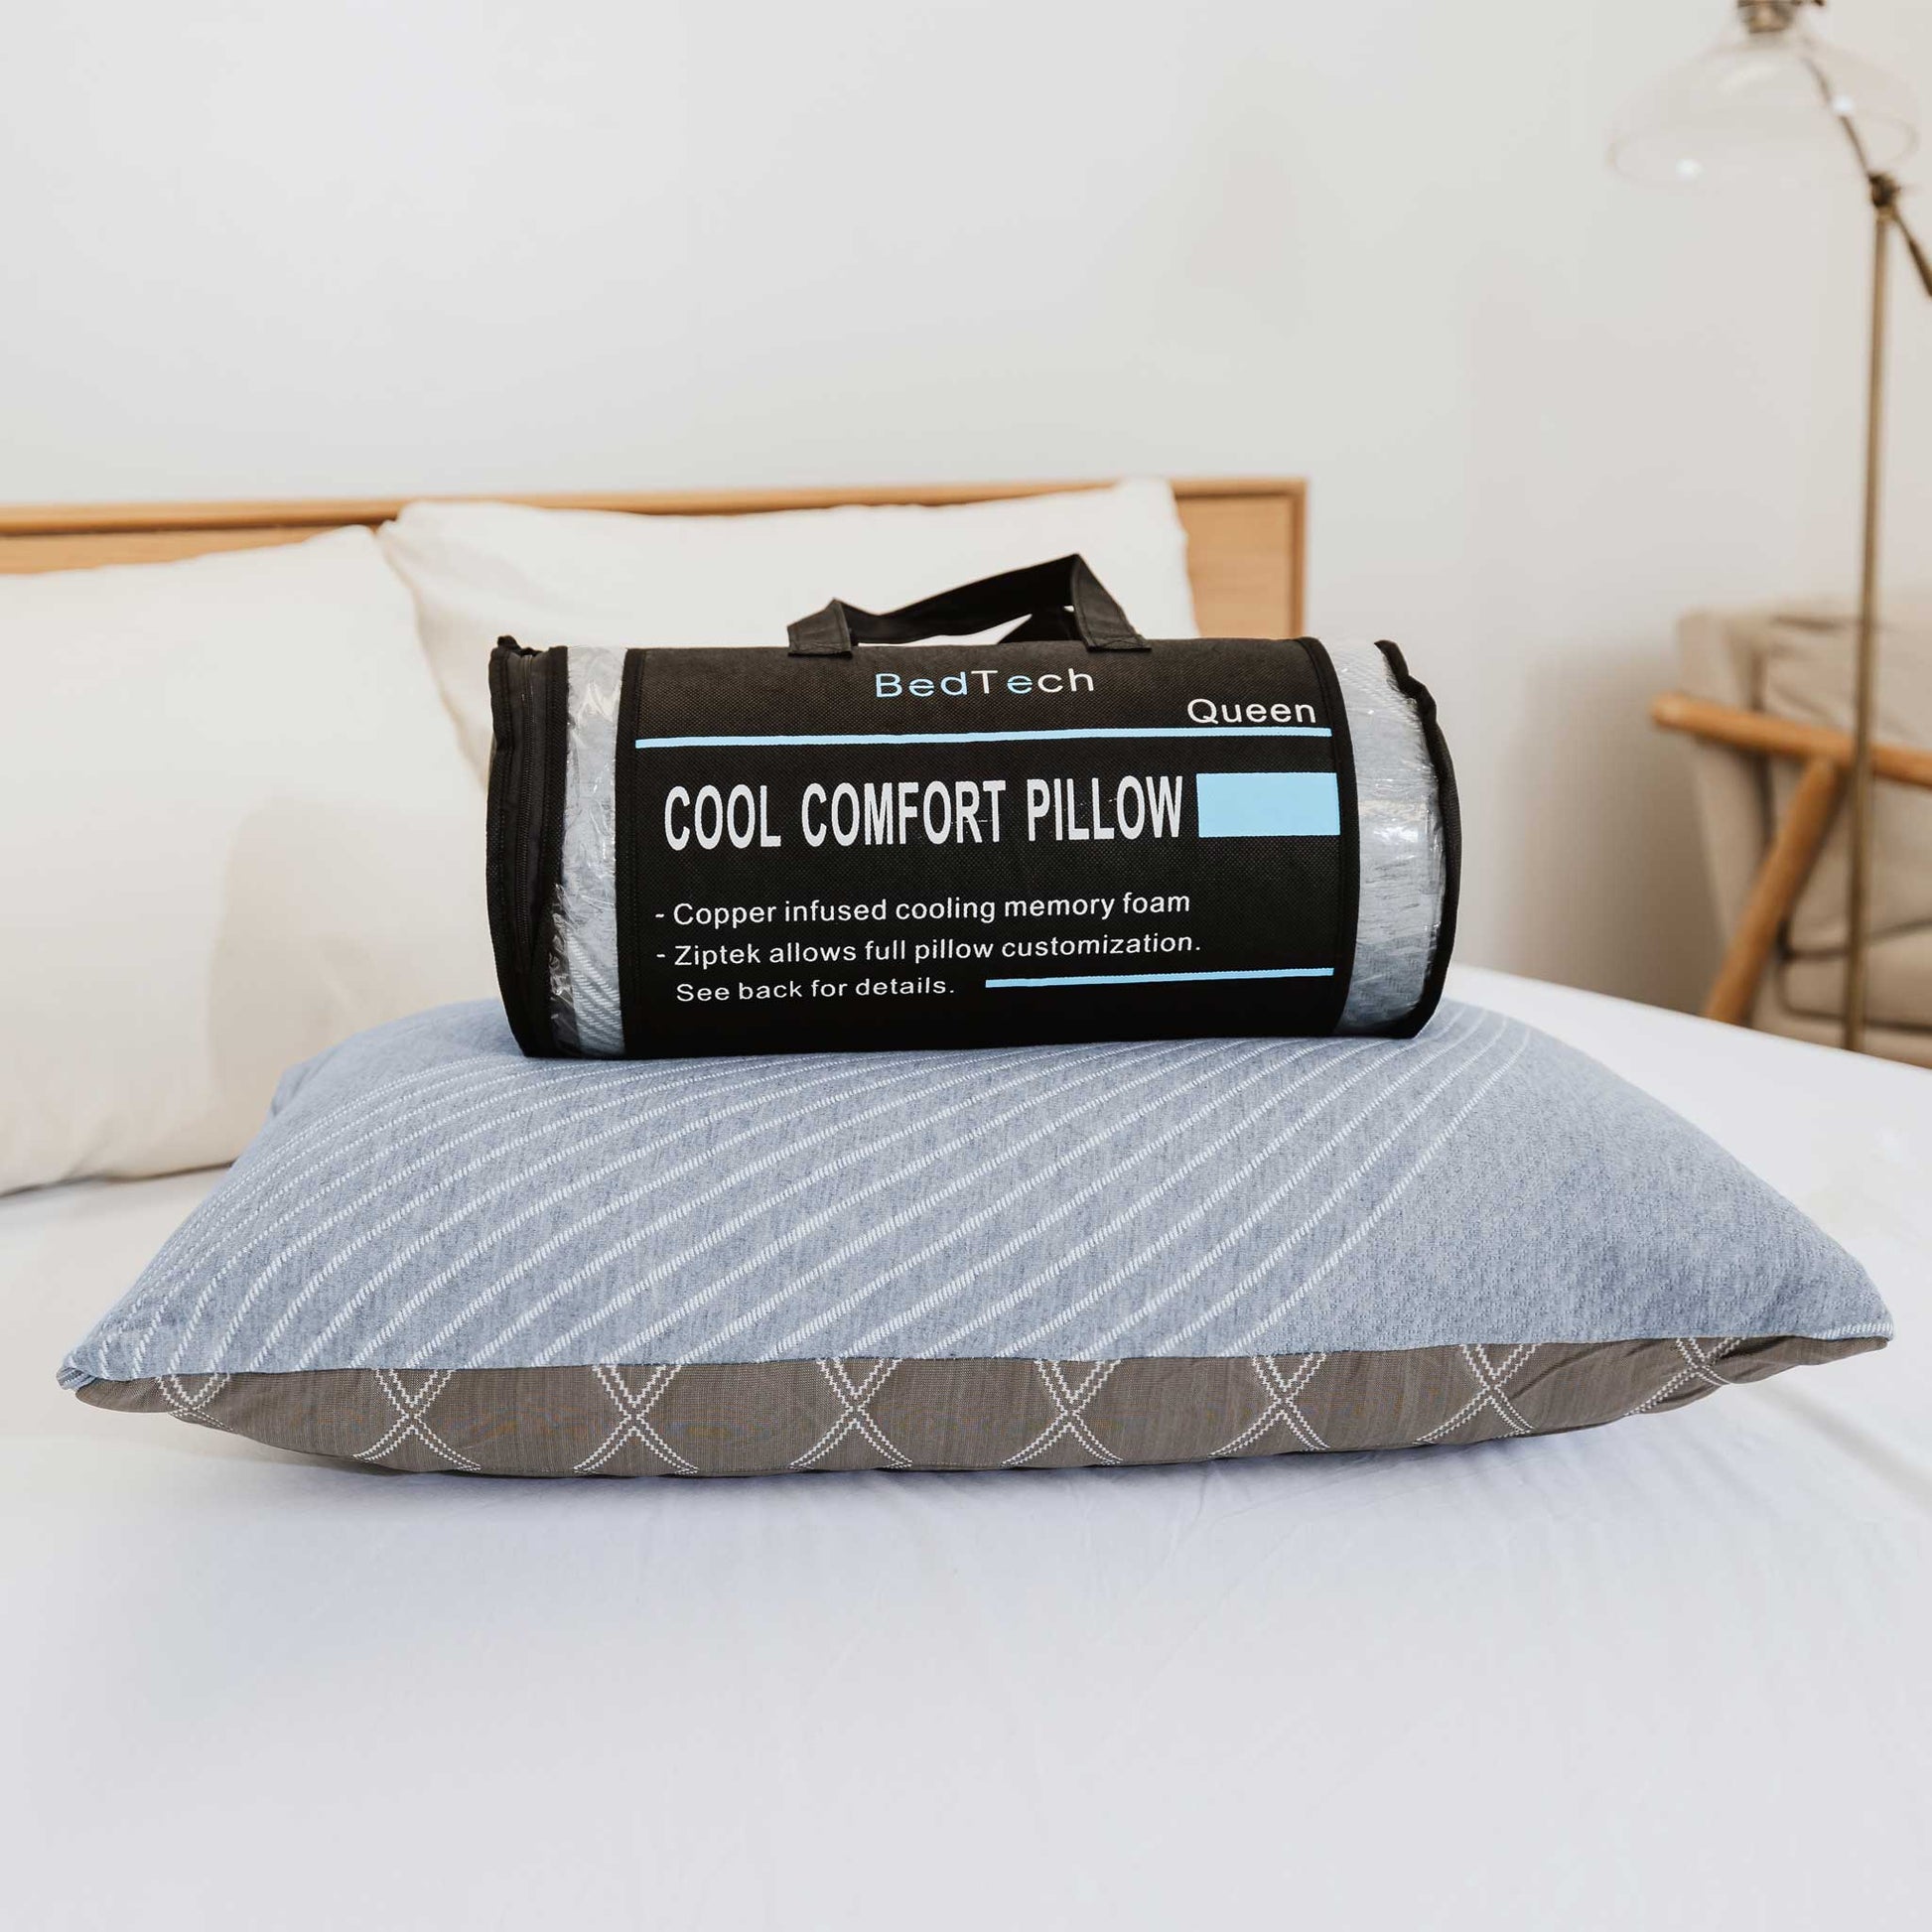 Cool Comfort Pillow – BedTech